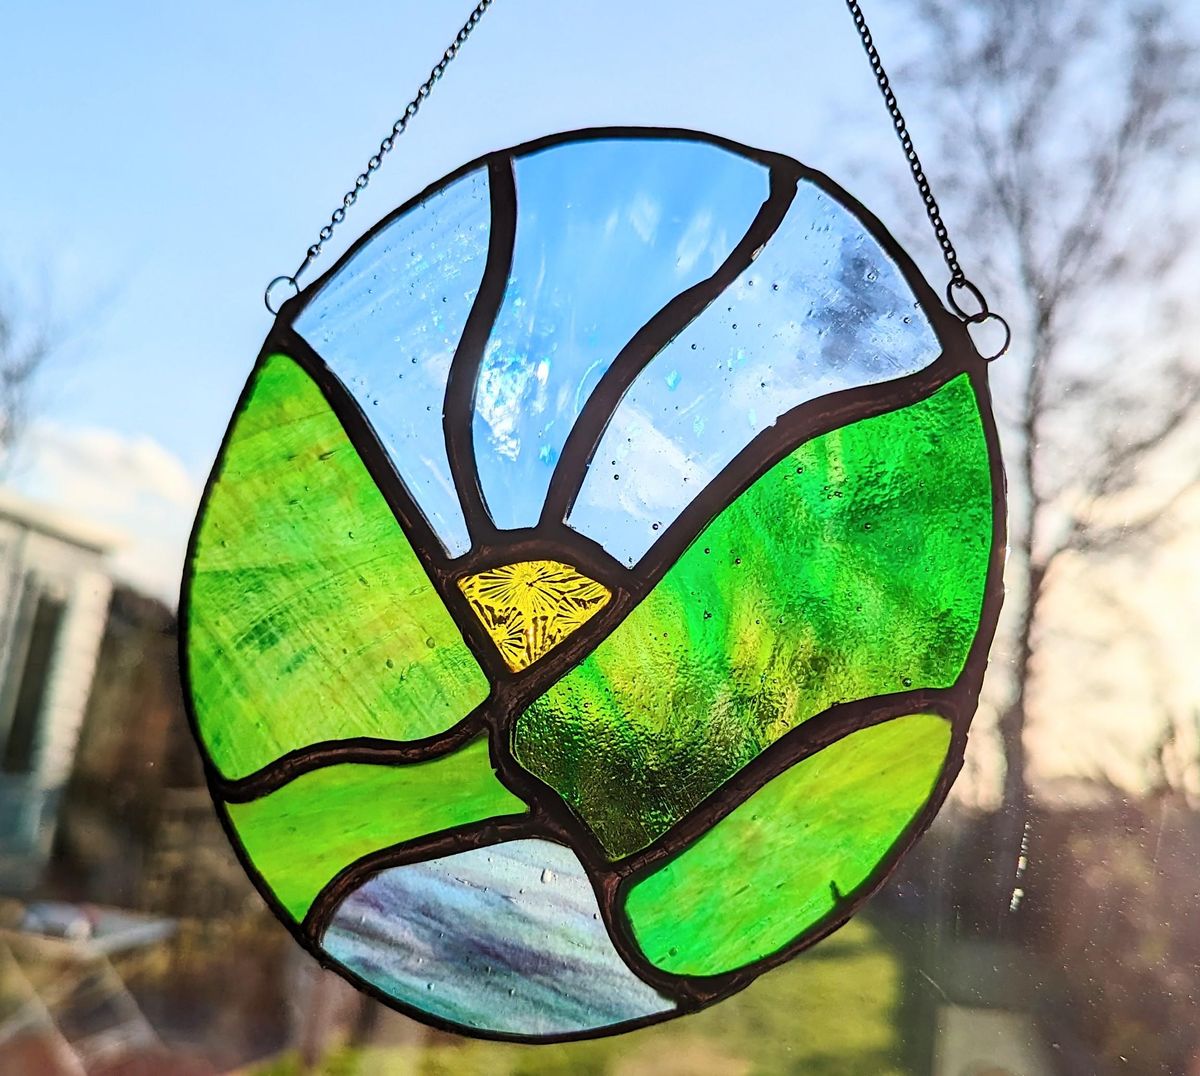 Stained glass suncatcher workshop a.m. (EWC 2806)